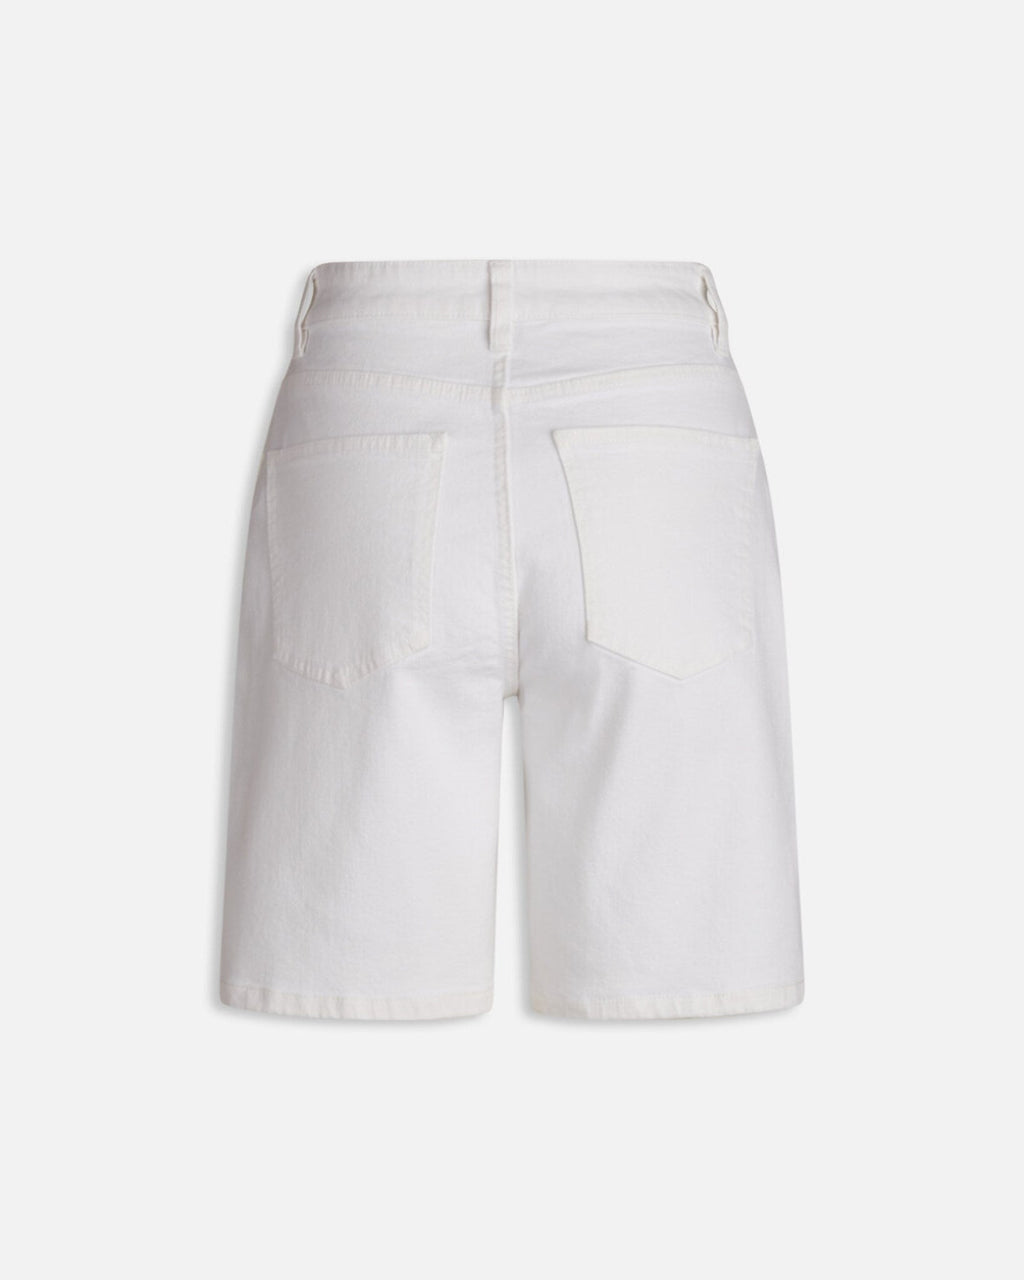 OWI Shorts - Ασπρο